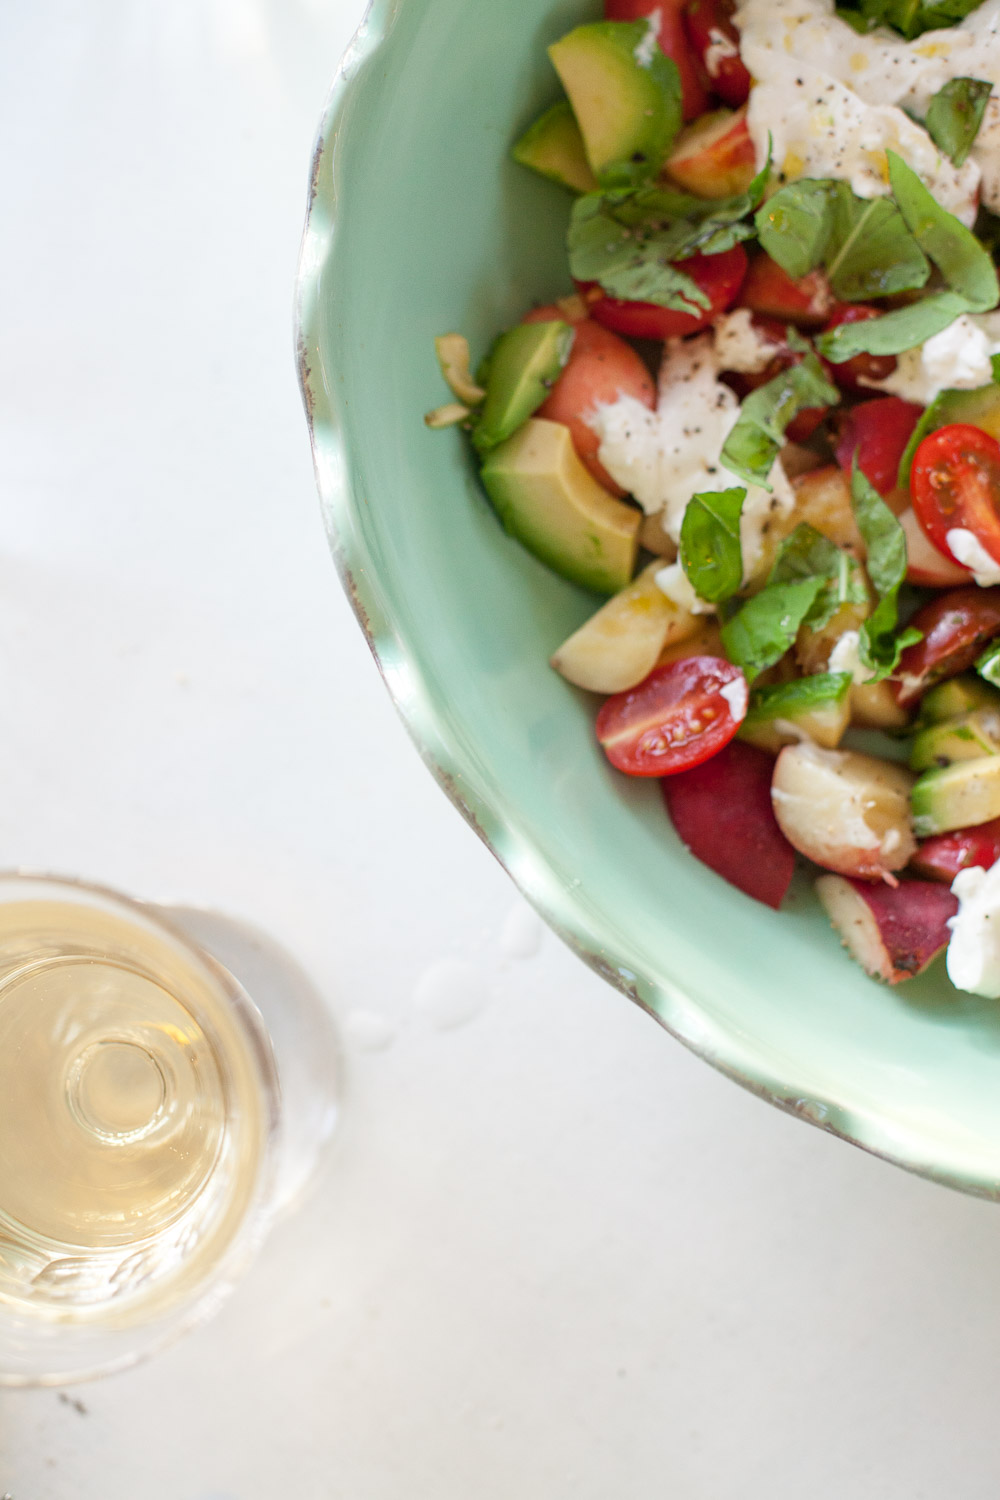 Ein tolles Rezept für den nächsten Sommerabend auf der Terrasse - der bunte Pfirsich-Burrata-Salat